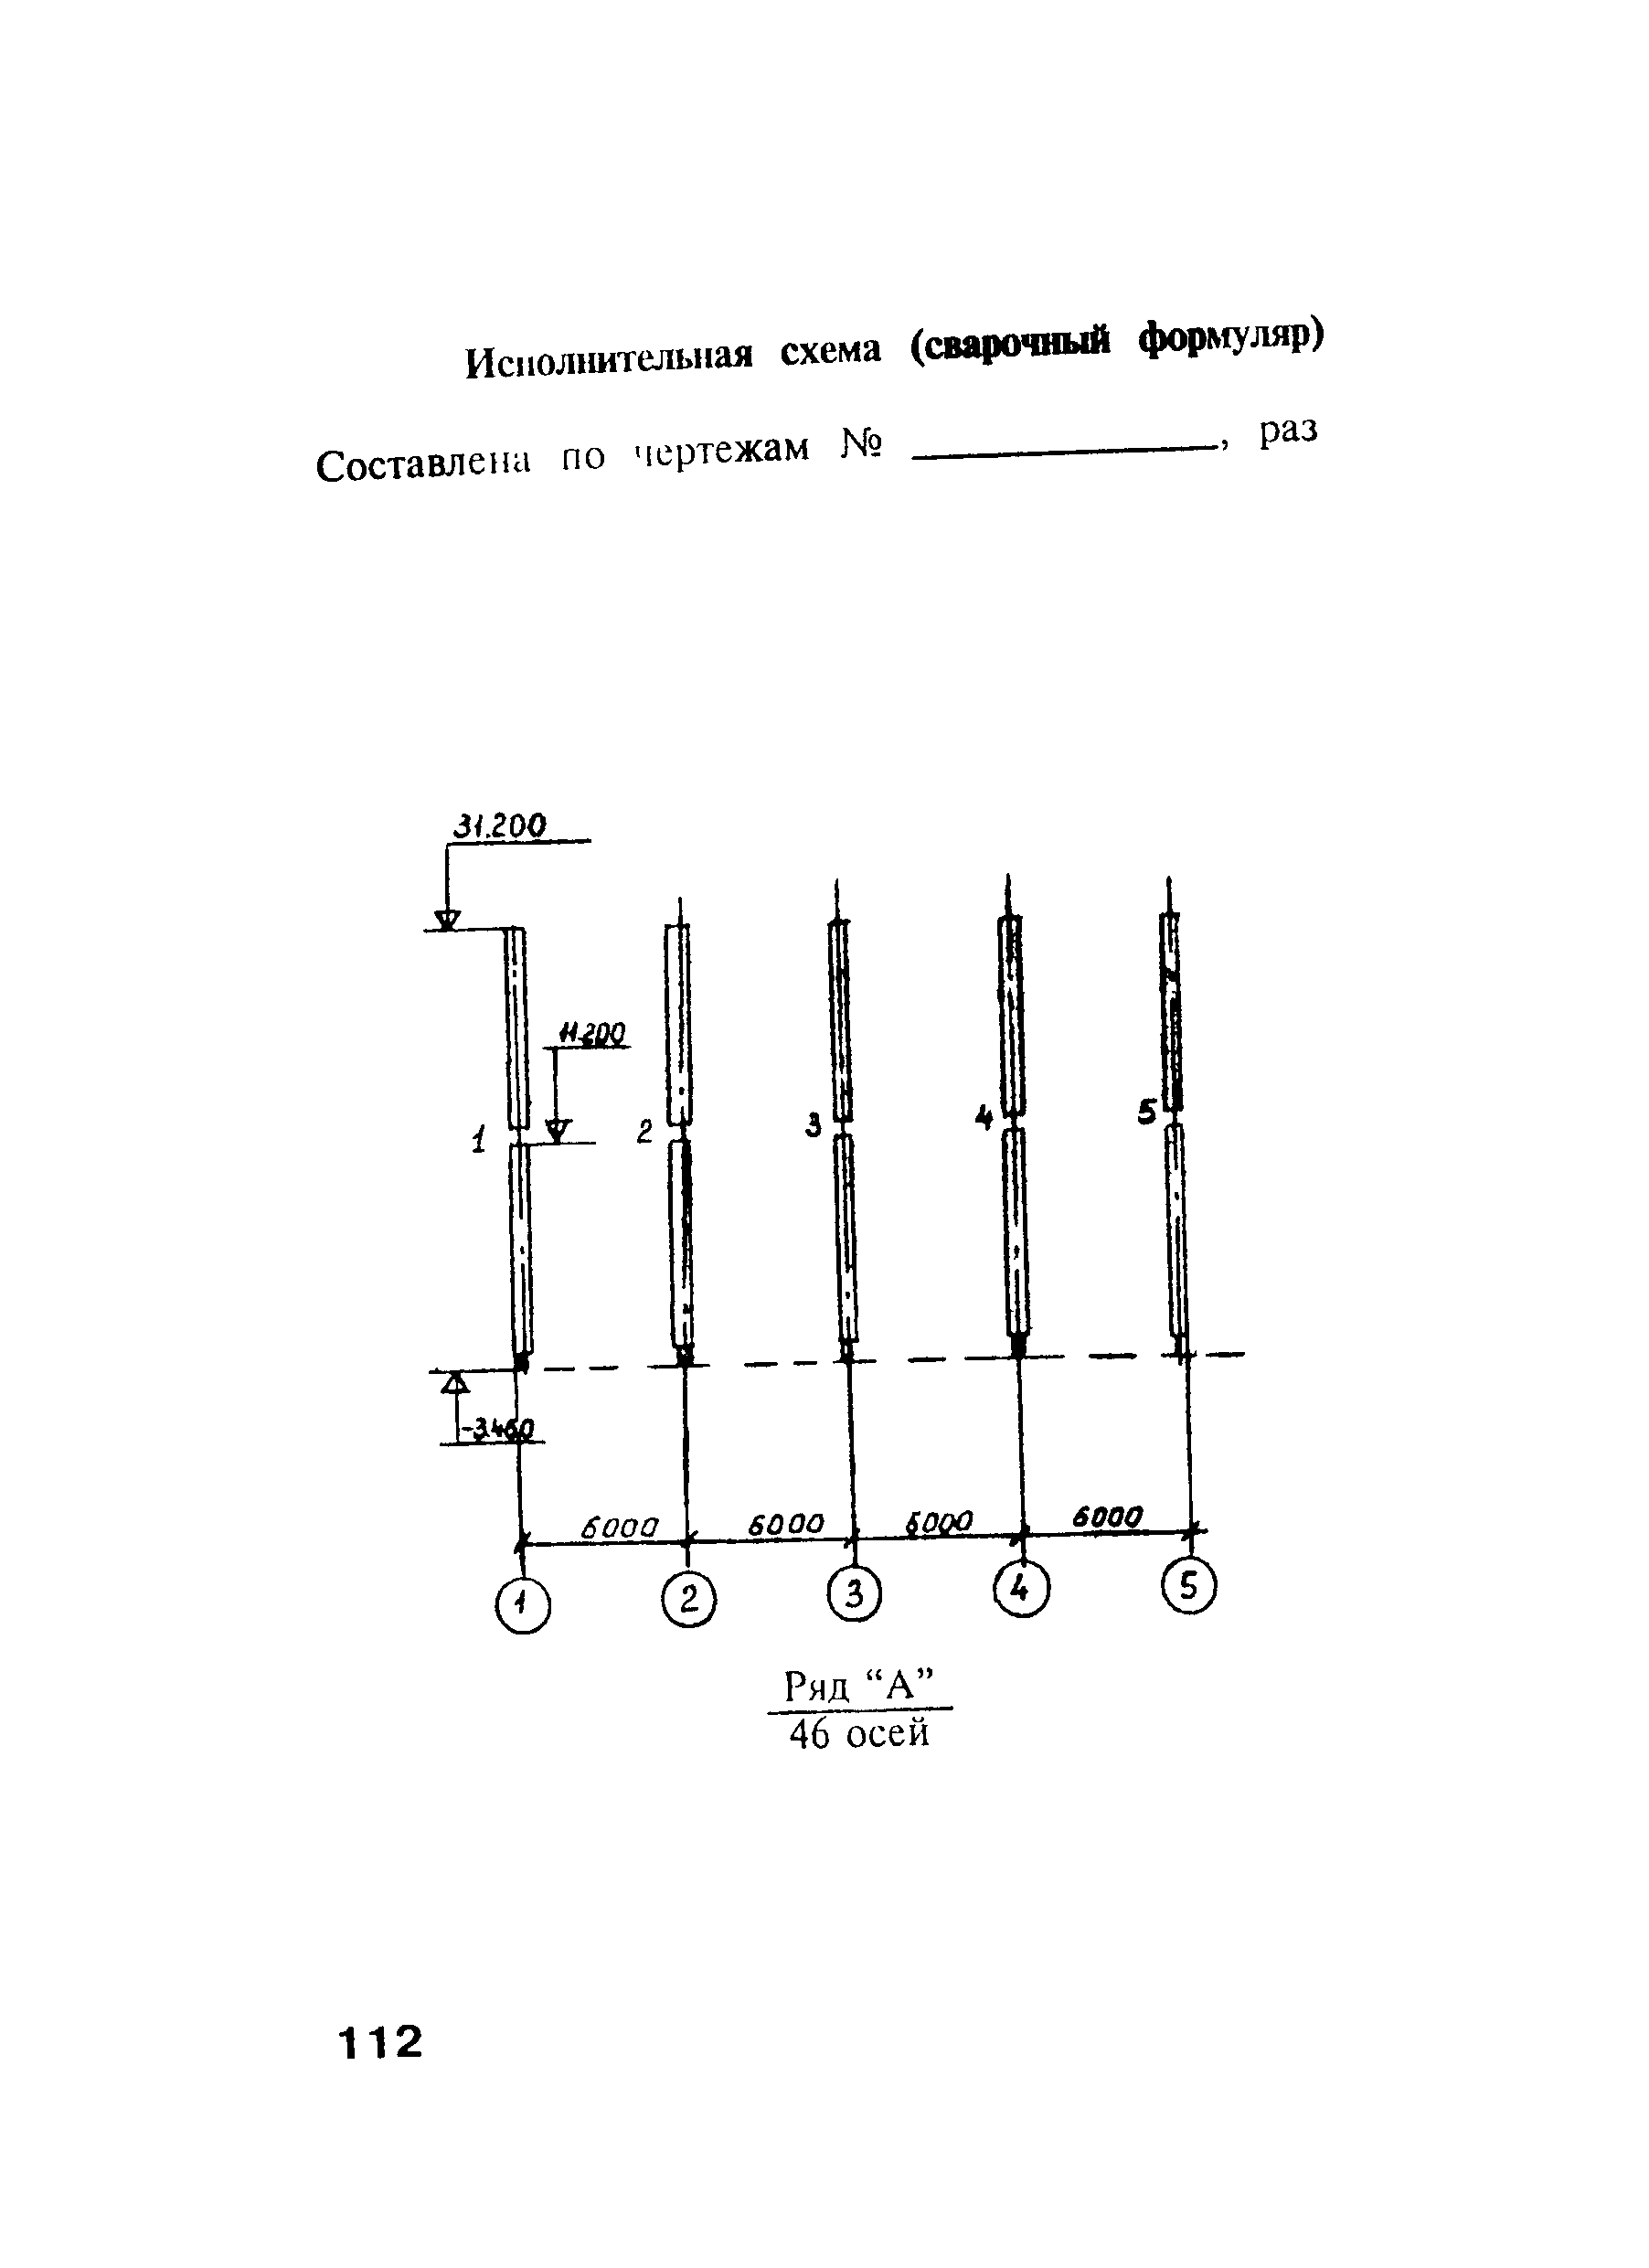 сварочный формуляр на металлоконструкции